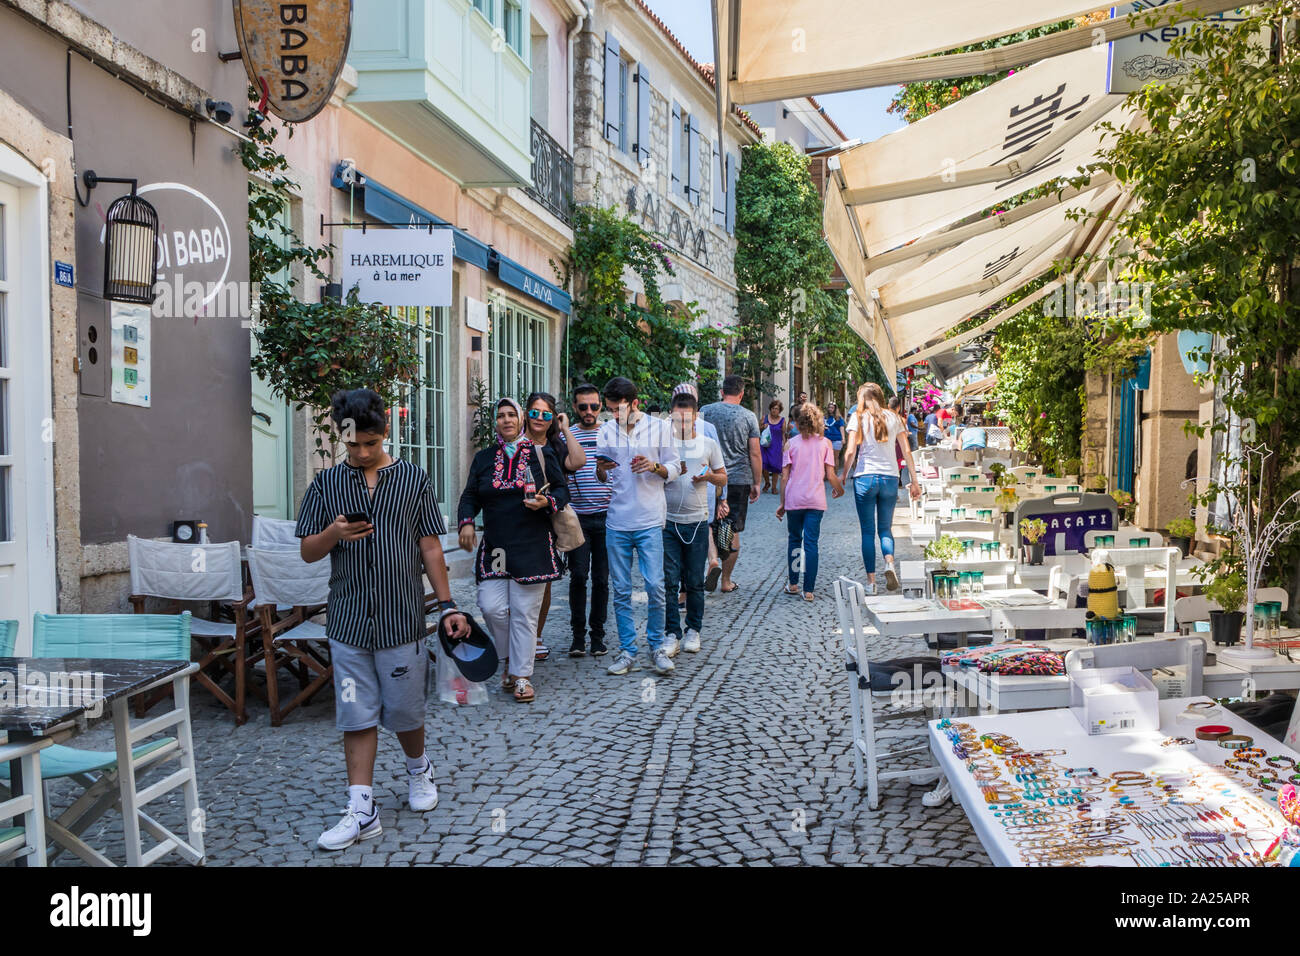 Cesme, Turquie - 4 septembre 2019 : les touristes marcher dans rue commerçante. La ville est une destination touristique populaire. Banque D'Images